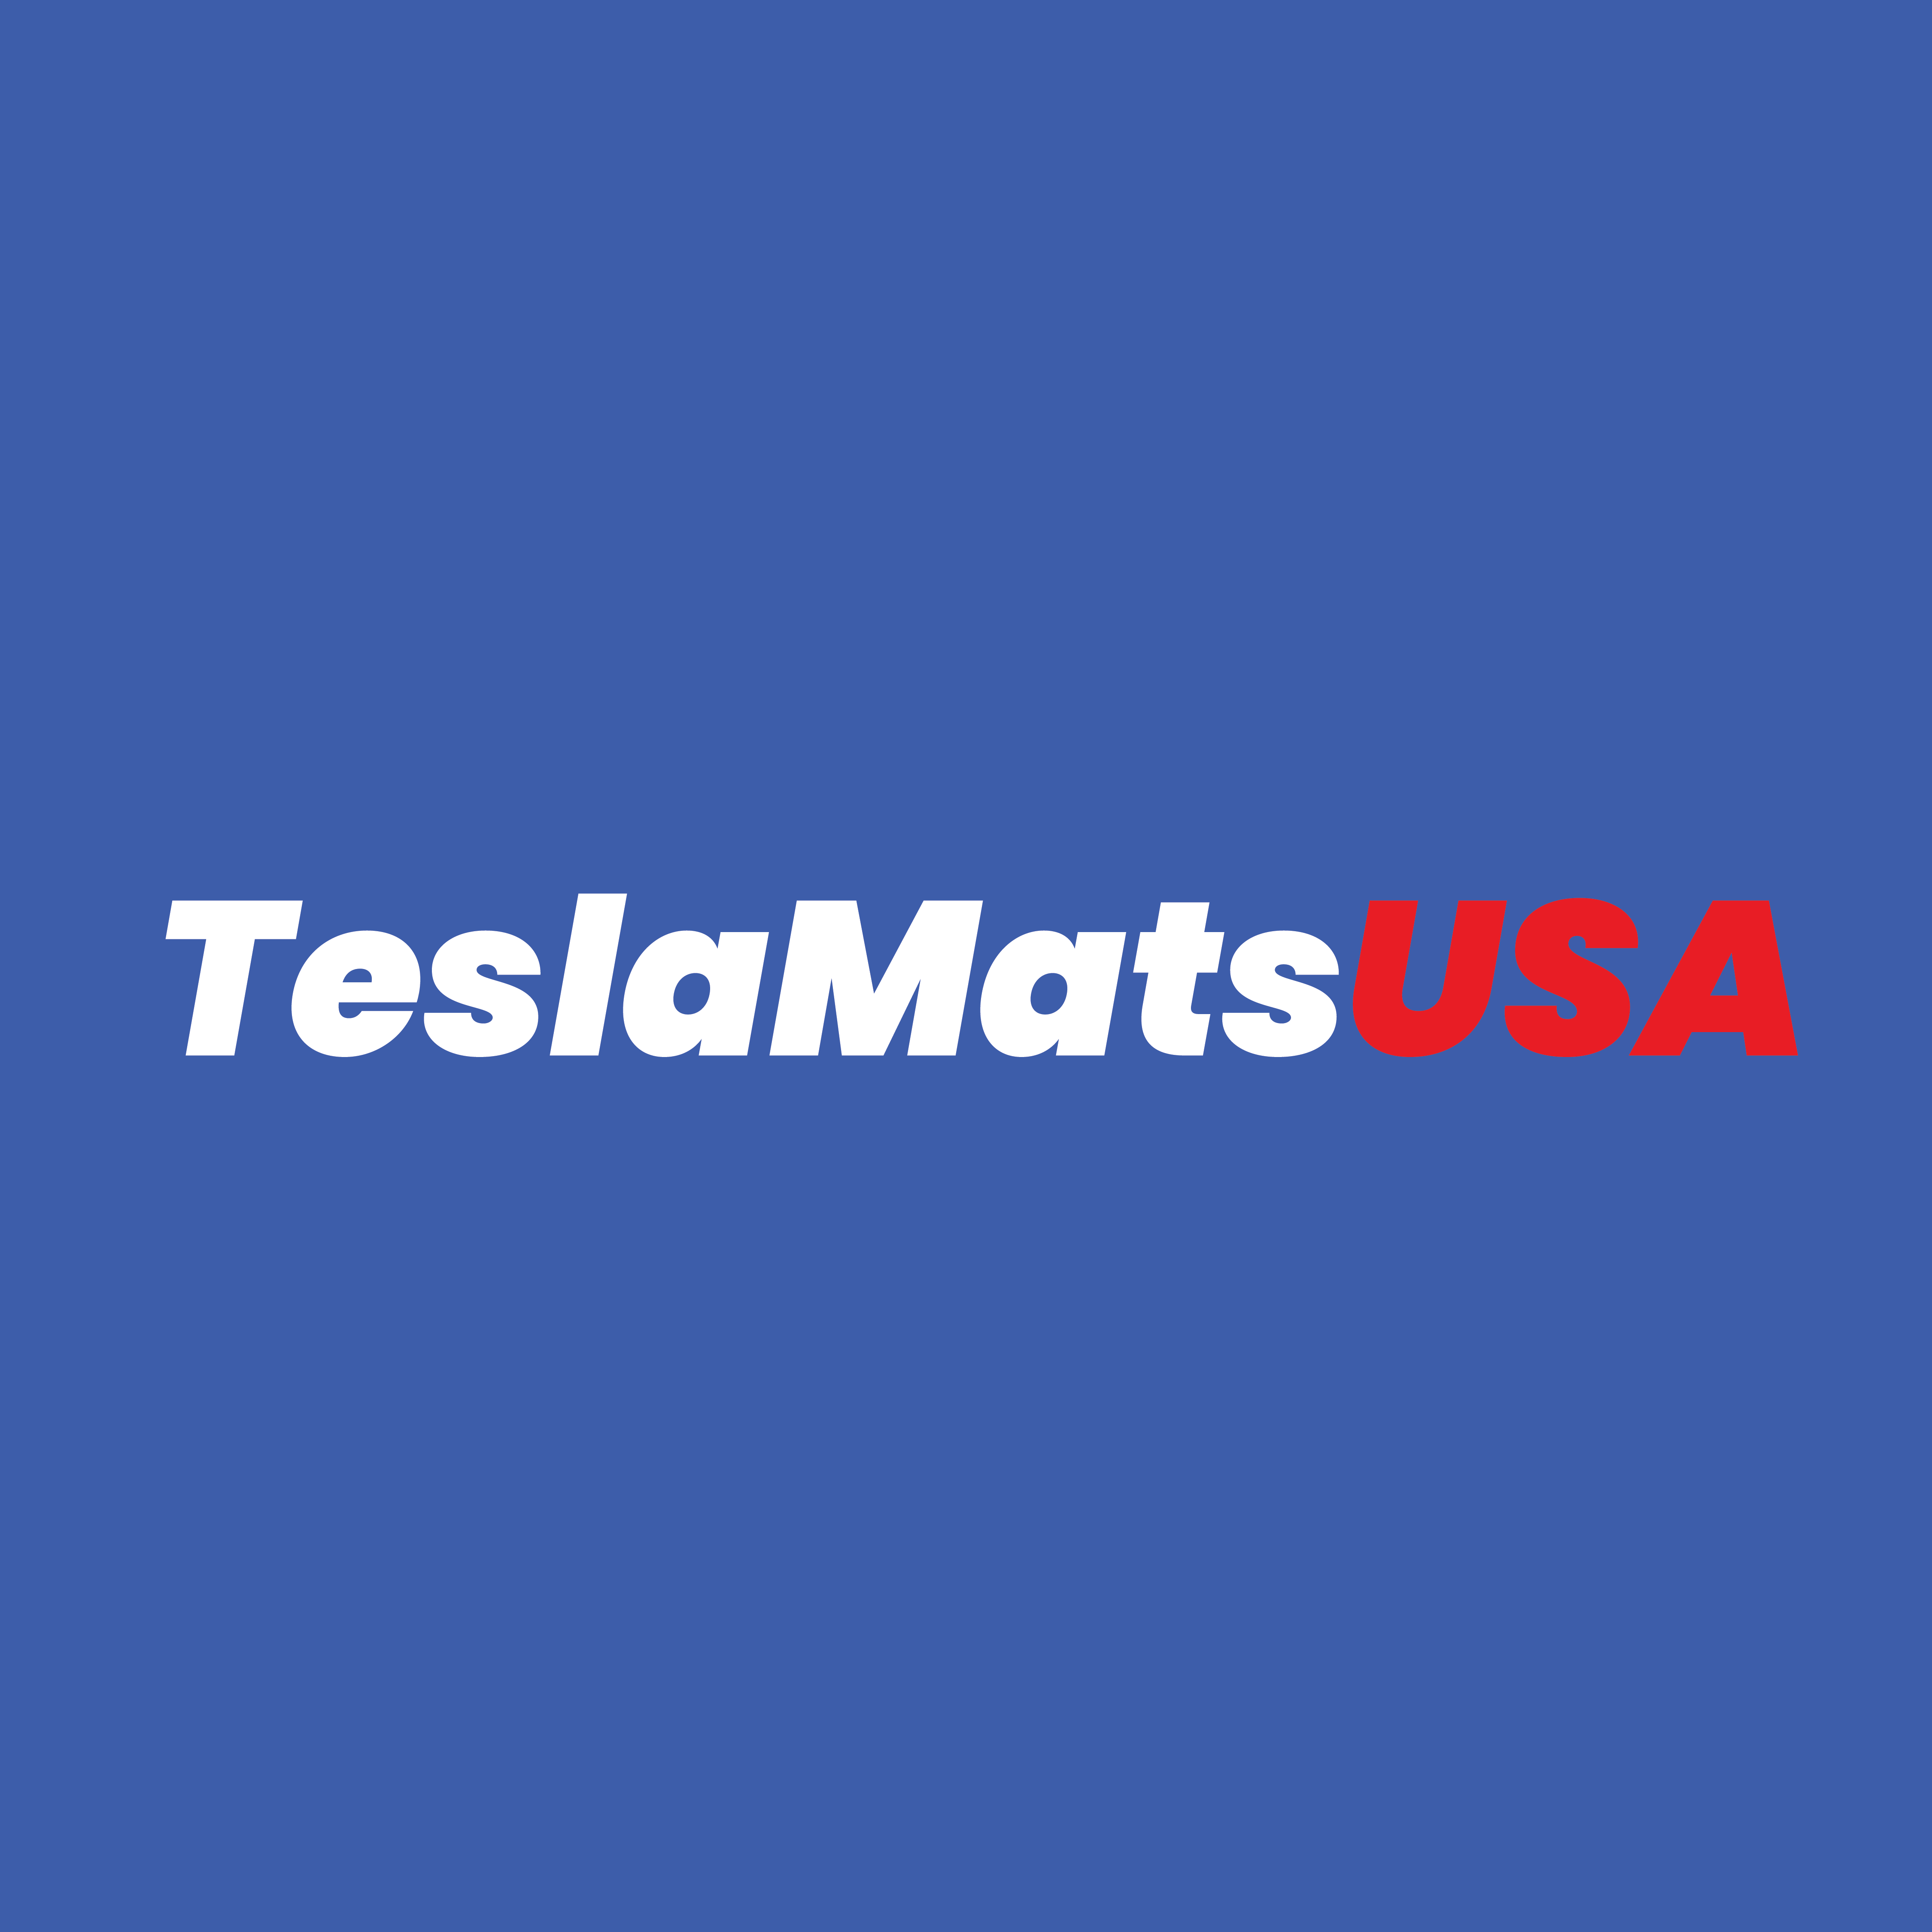 Tesla Mats USA